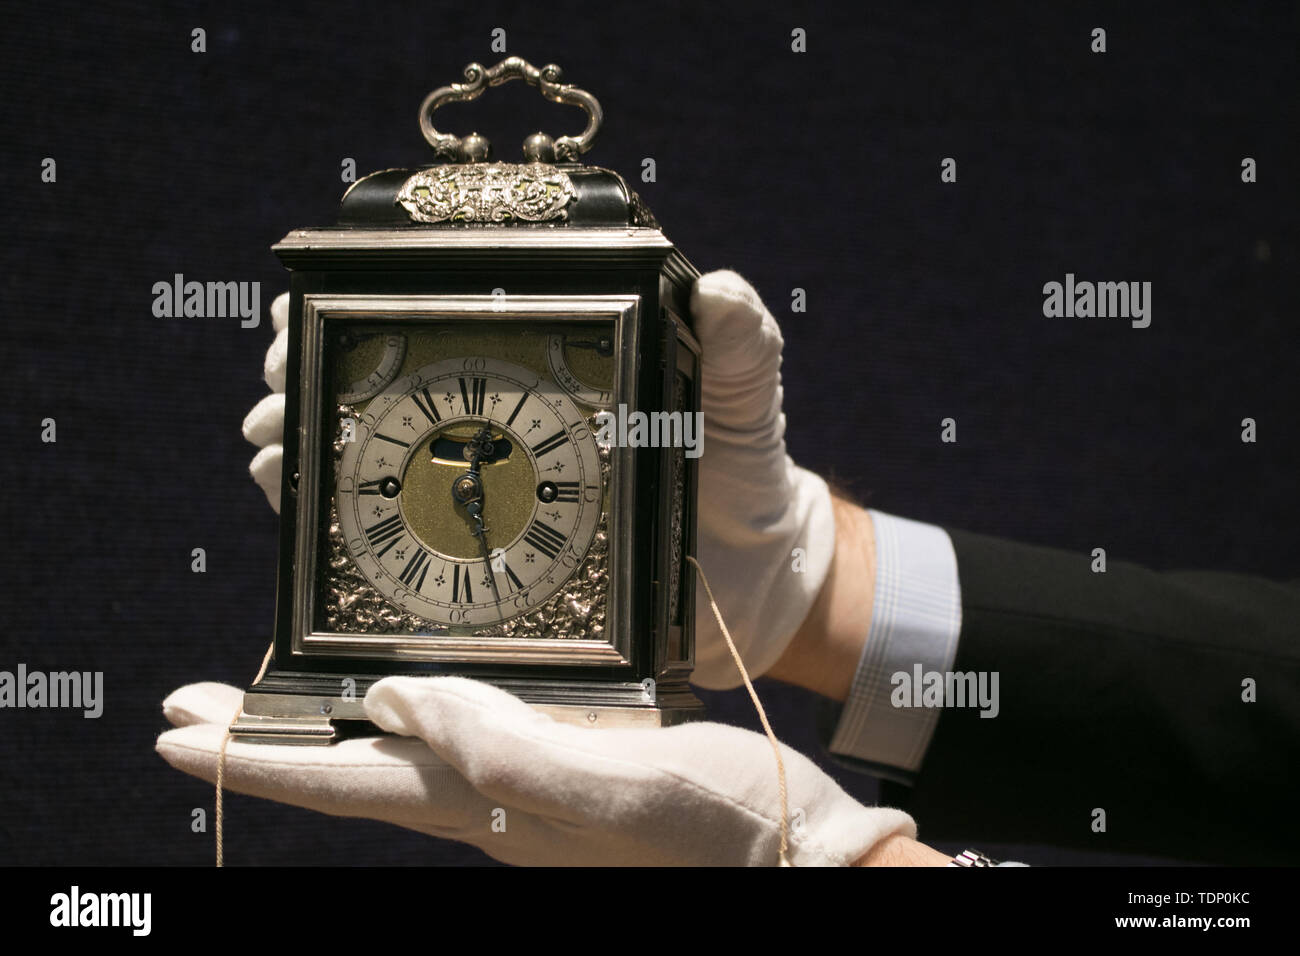 Der König William & Queen Mary Royal Tompion Tischuhr von uhrmachermeister Thomas Tompion für Queen Mary II im Jahre 1693, eine der wertvollsten Uhren in wertvollsten Uhren der Welt von Clive Sammlung und wird voraussichtlich von mehr als GBP 2.000.000 zu holen ist an der Auktion bei Bonhams New Bond Street in London zu erscheinen. Stockfoto